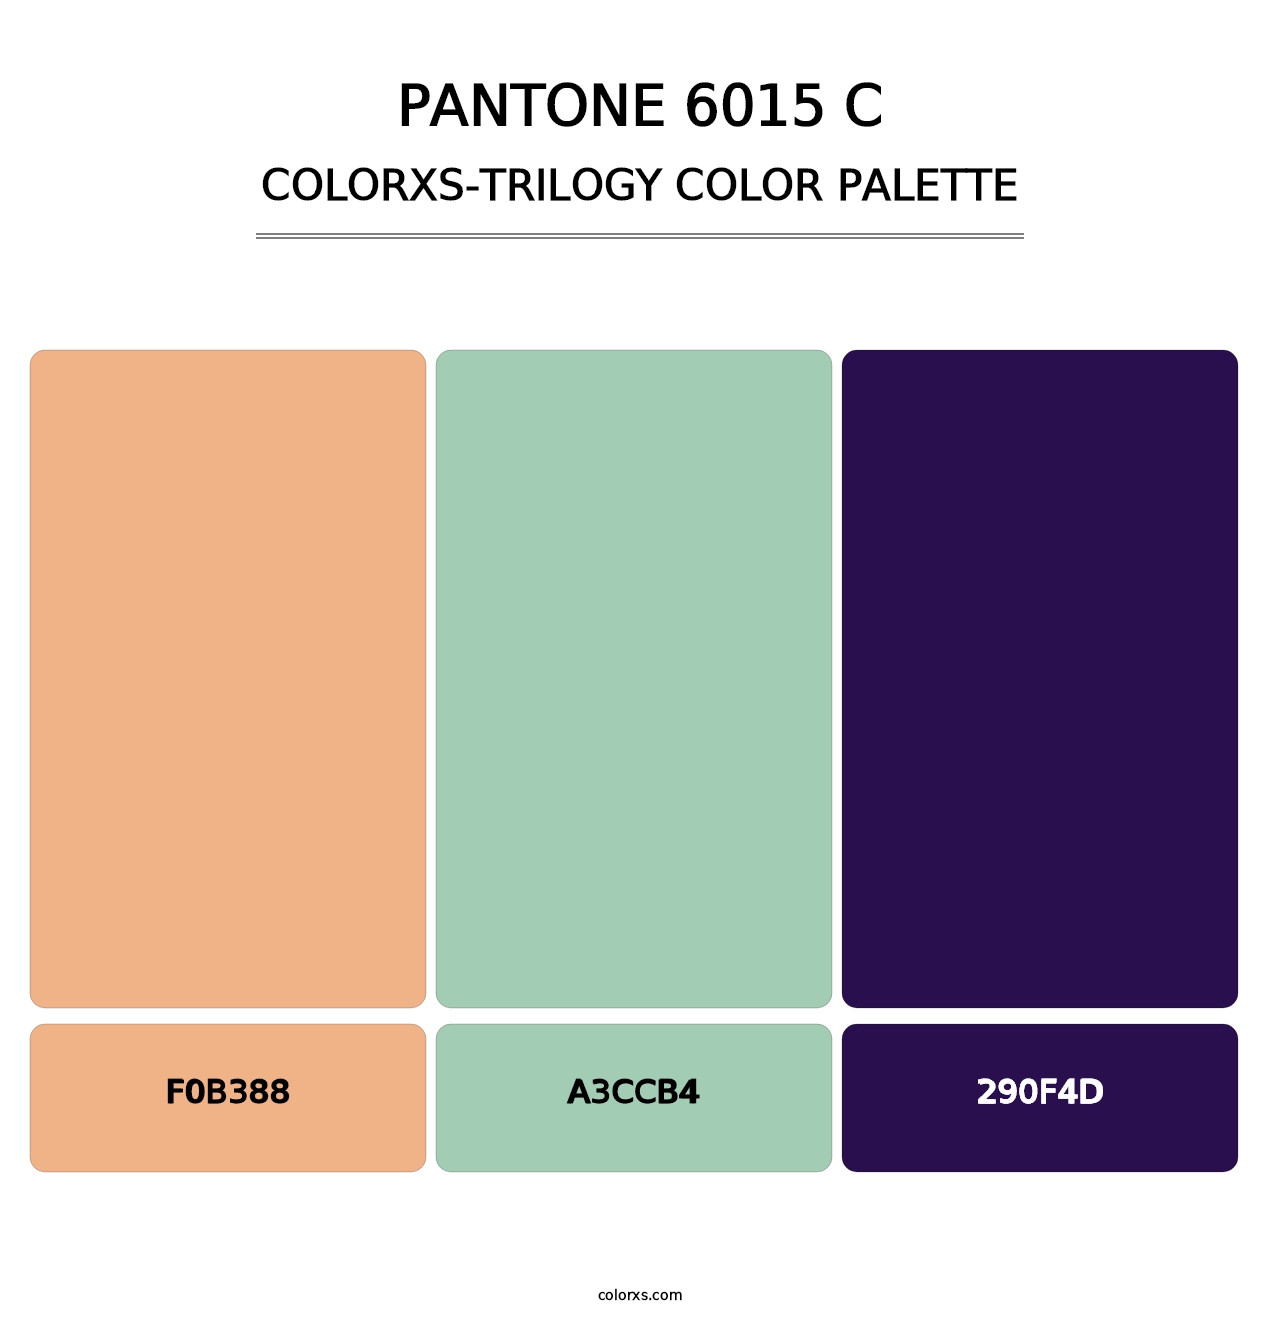 PANTONE 6015 C - Colorxs Trilogy Palette